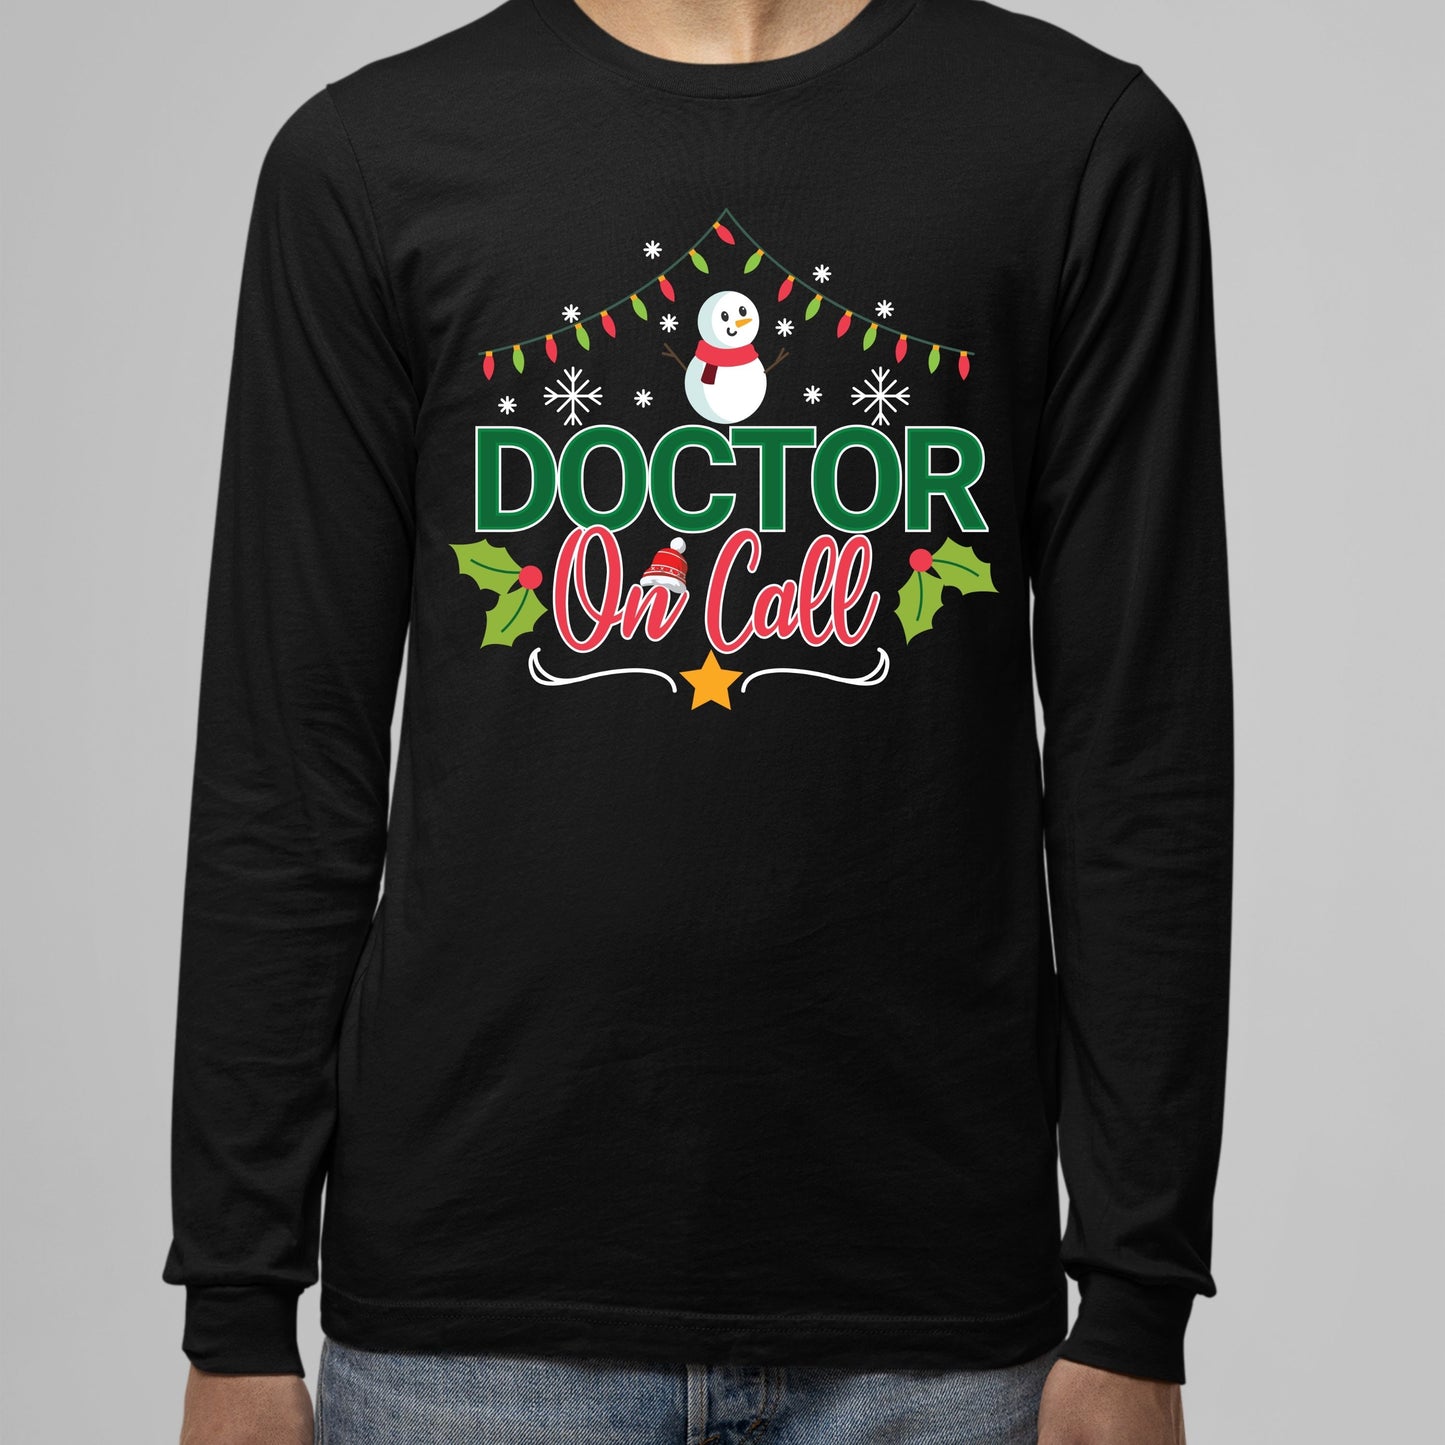 Doctor on Call, Nursing School TShirt, Doctor Gift for Him, Christmas Shirt,  Sweatshirt, Doctor Shirt, Christmas